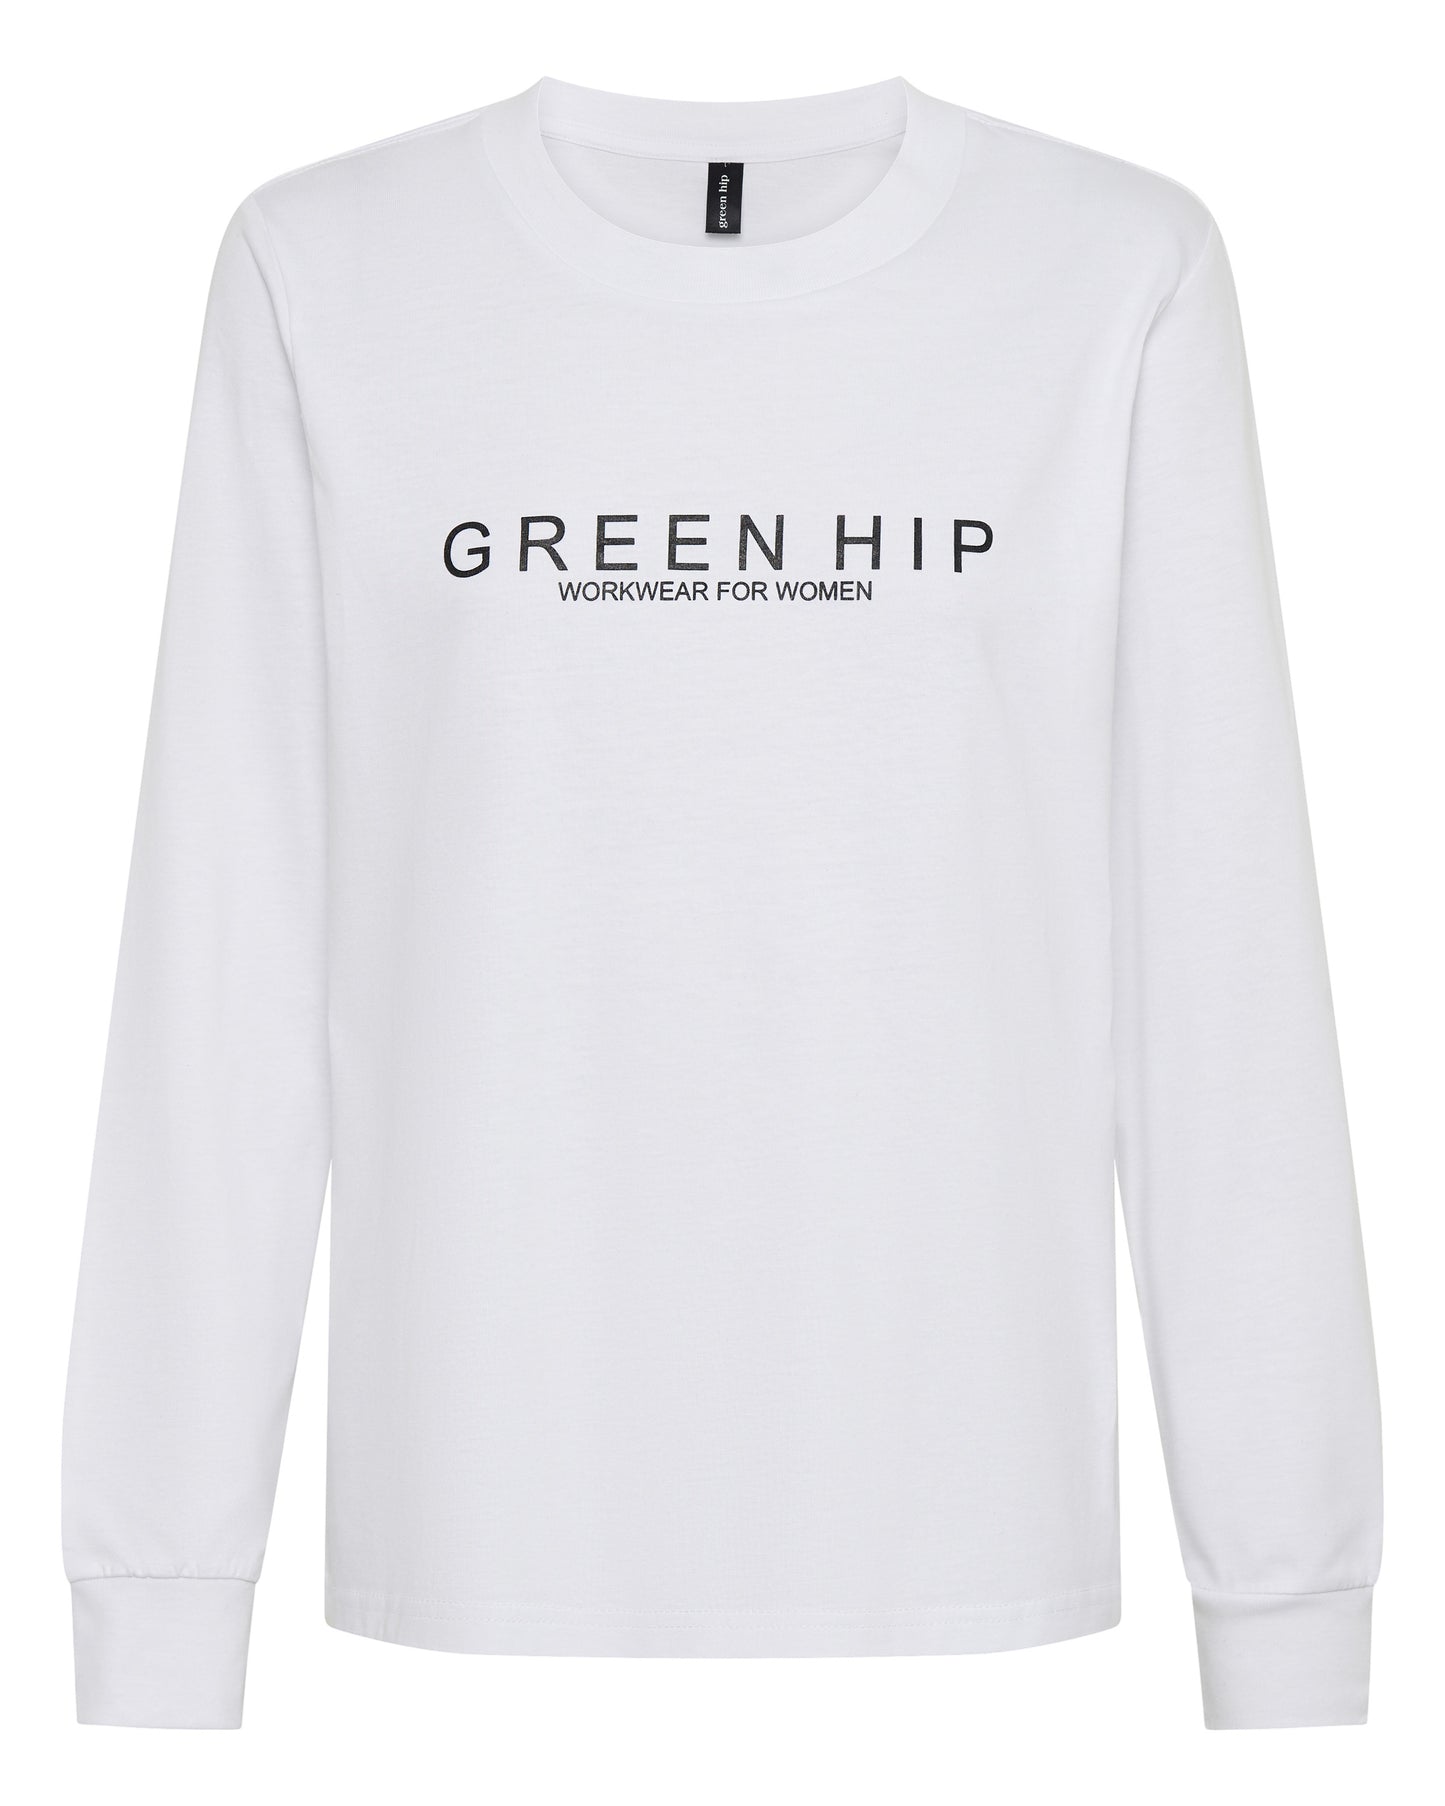 'Green Hip' Womens Long Sleeve T-Shirt